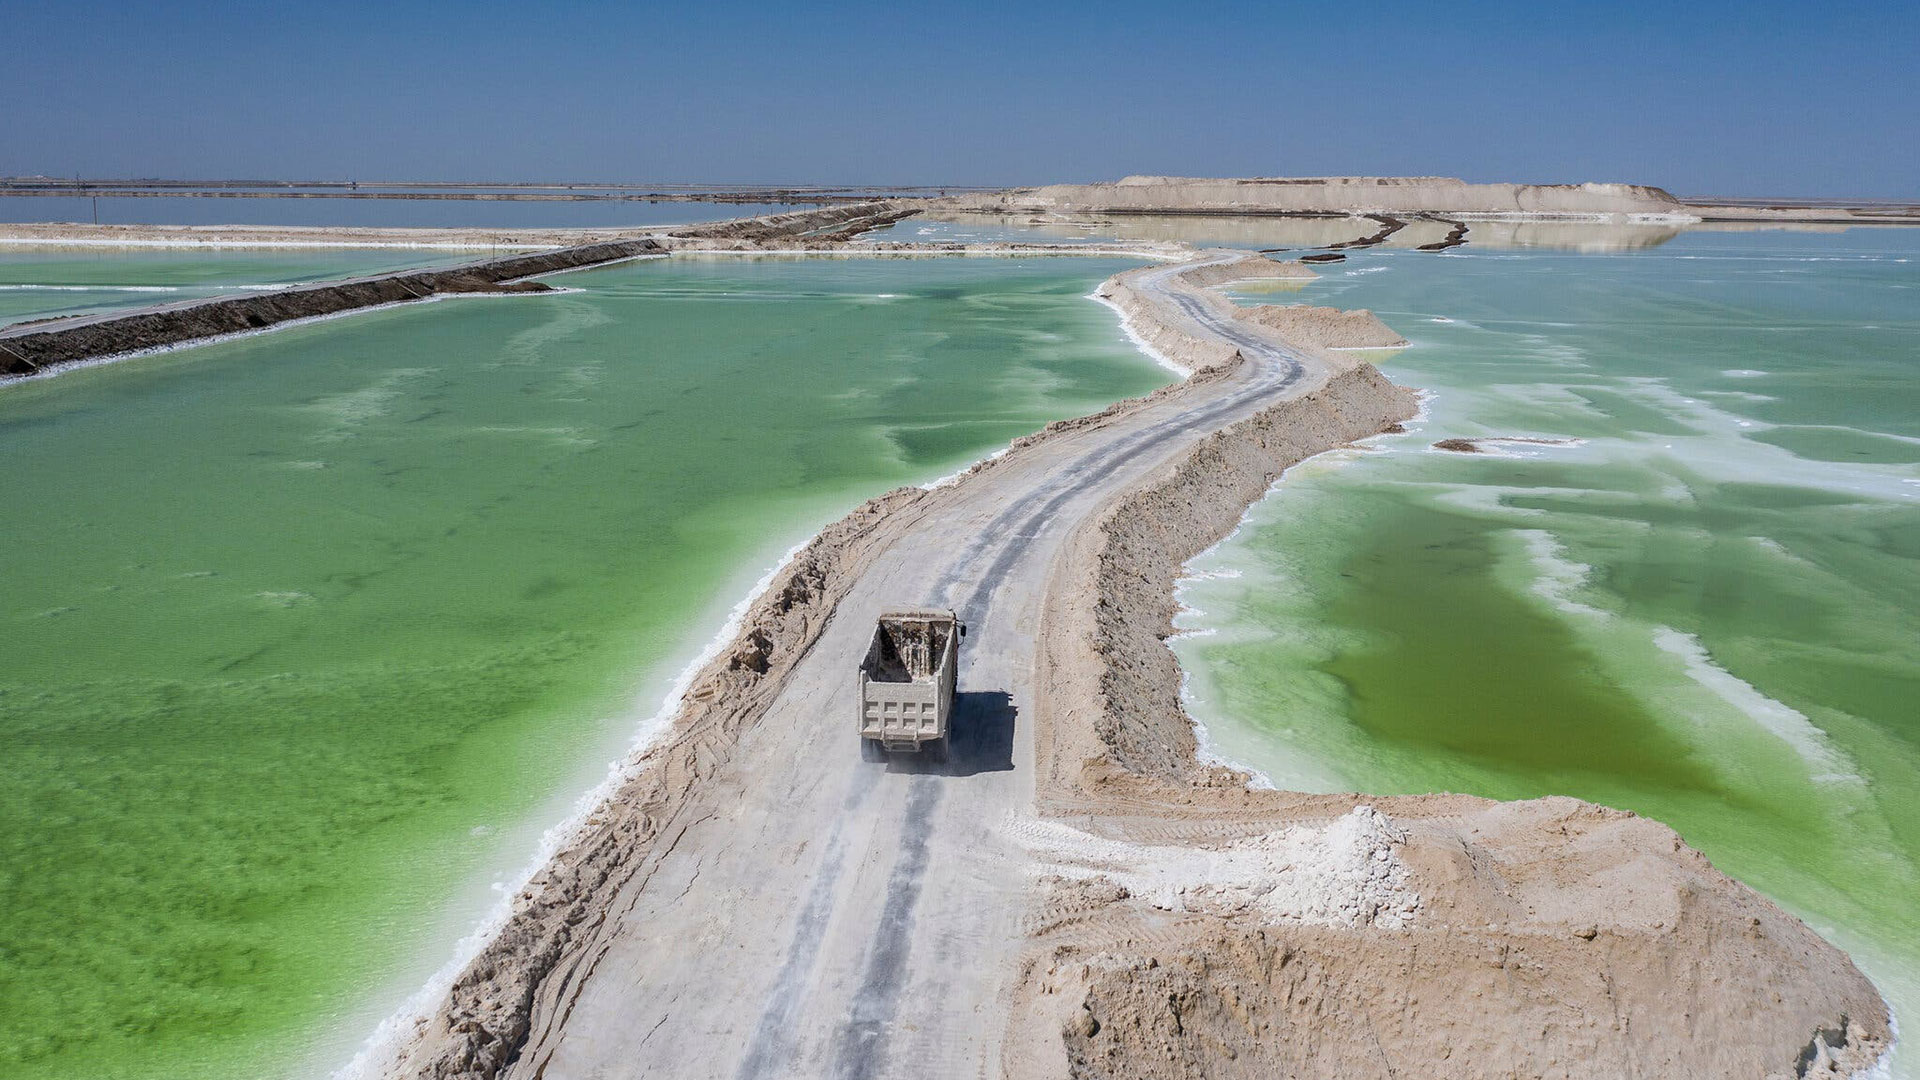 El lago salado de Chaerhan en Golmud, China, donde se procesa salmuera para extraer litio y otros minerales (foto: Qilai Shen para The New York Times)